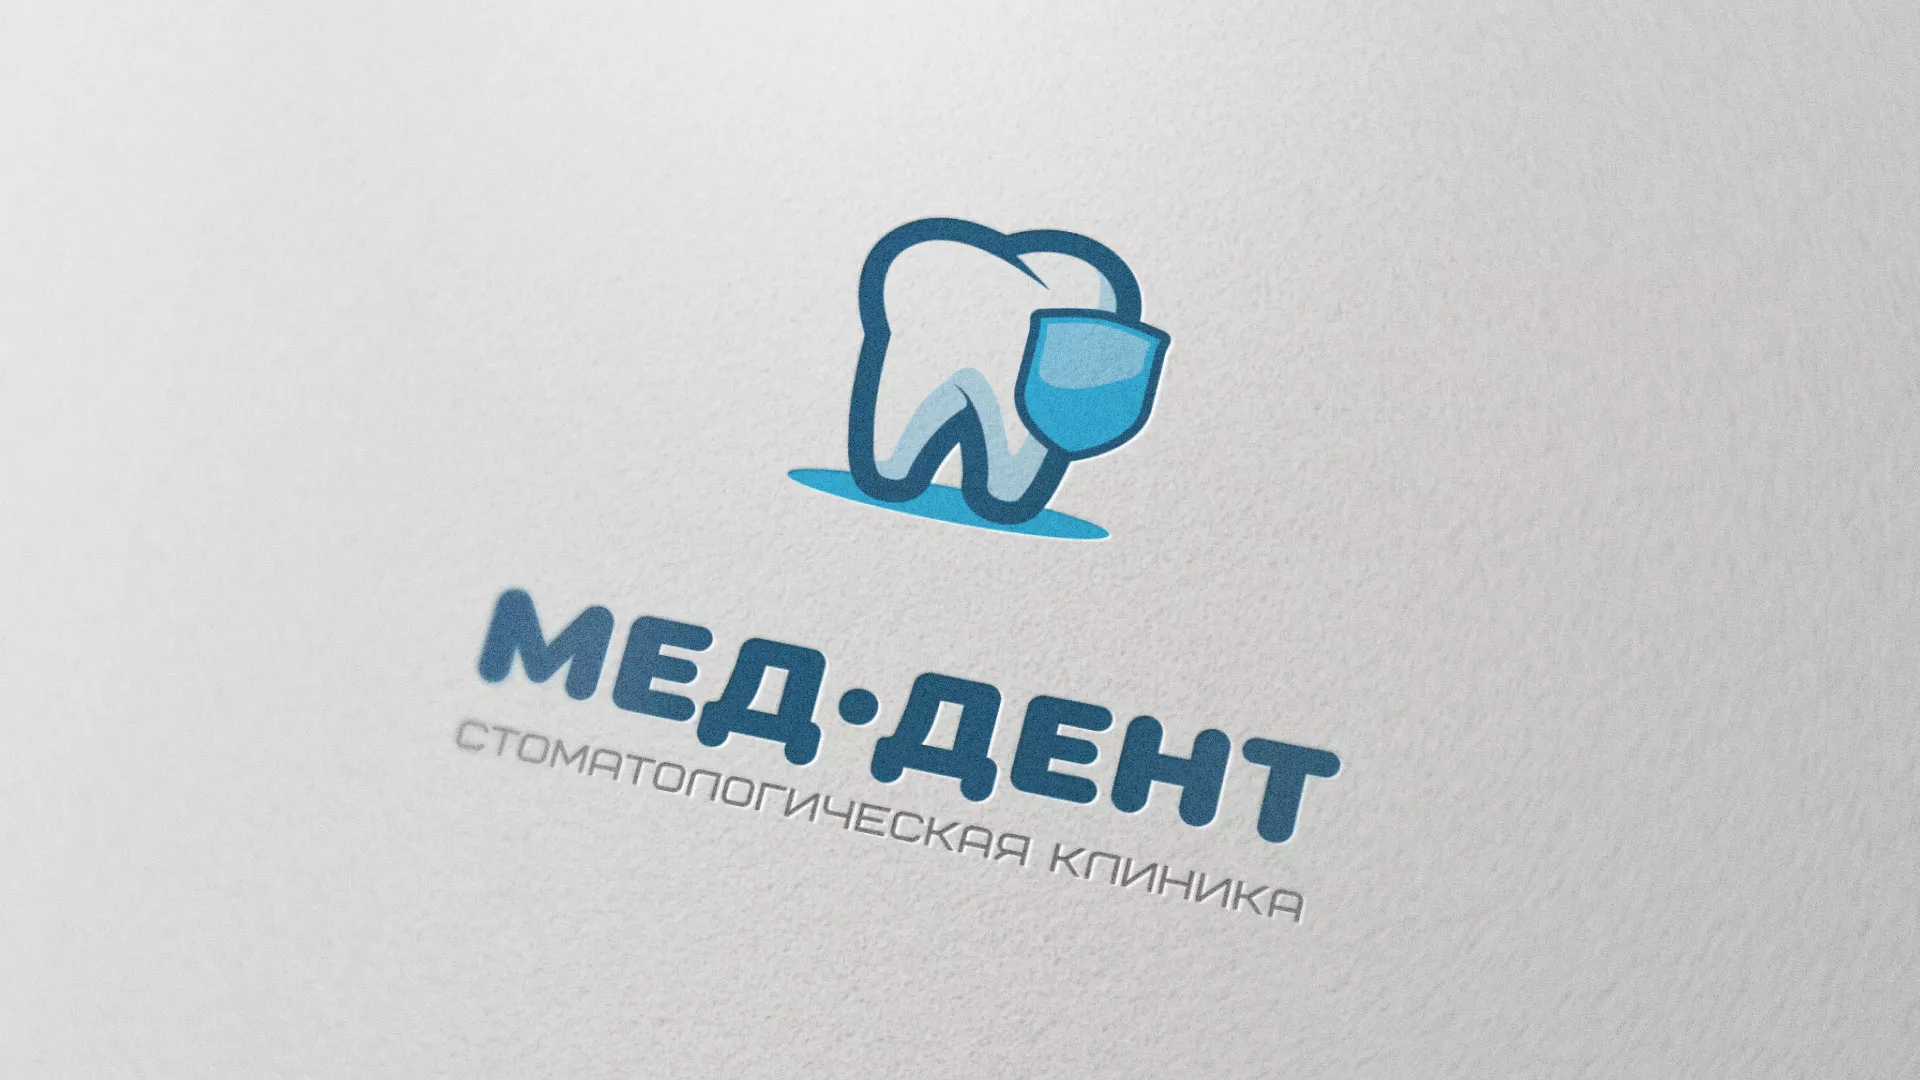 Разработка логотипа стоматологической клиники «МЕД-ДЕНТ» в Мамоново